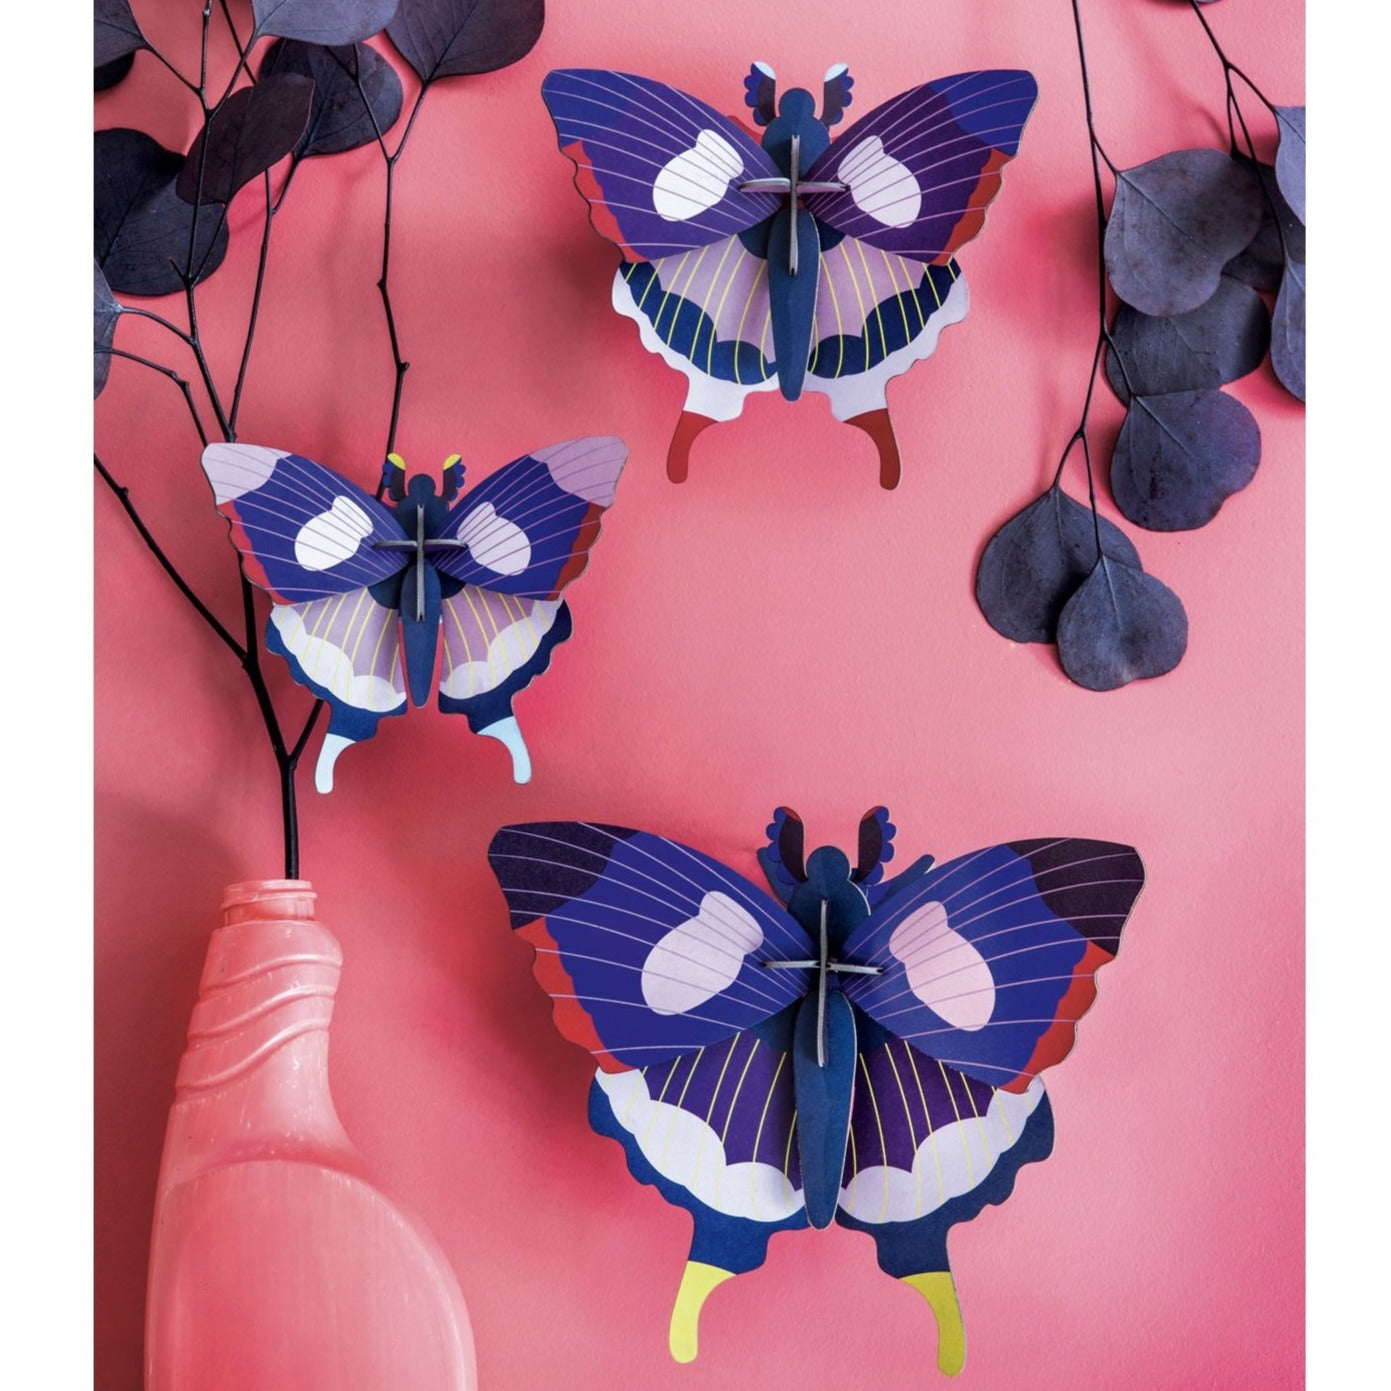 Studio Roof 3D Model Wall Decor - Set of 3 Swallowtail Butterflies